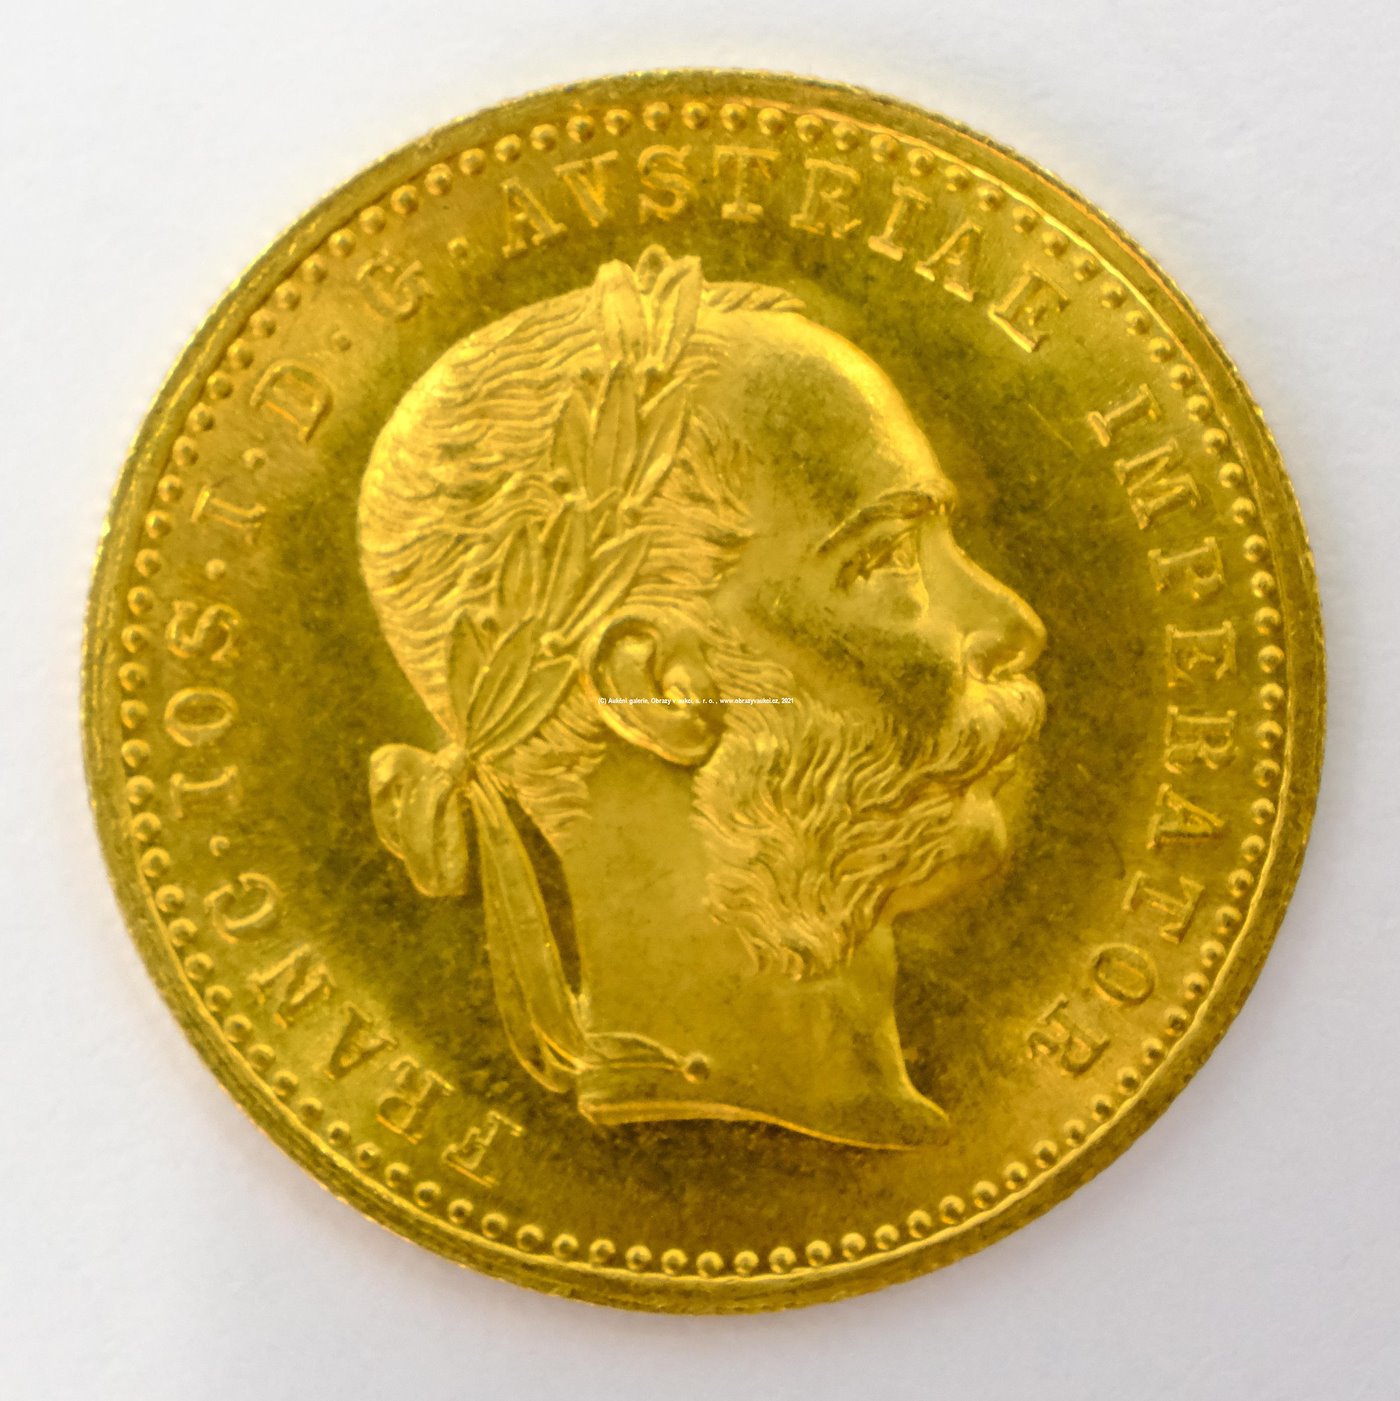 .. - Rakousko Uhersko zlatý 1 dukát 1914. Zlato 986/1000, hrubá hmotnost mince 3,491g